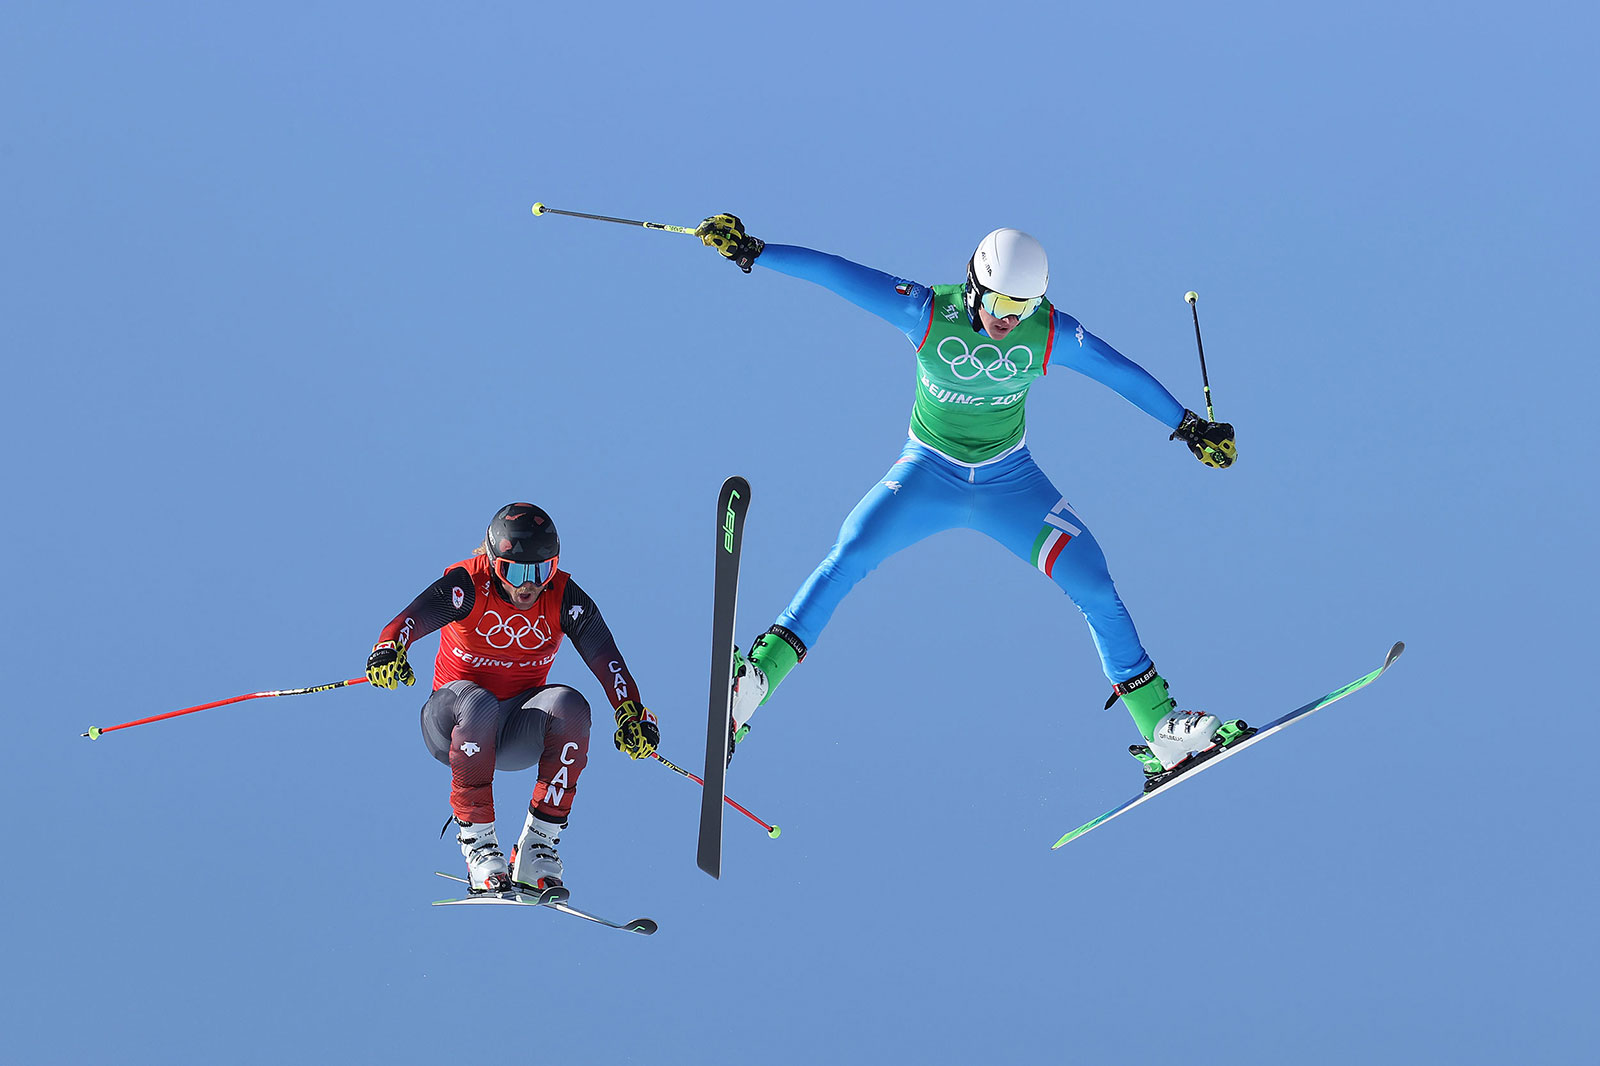 Canada's Brady Leman, left, Italy's Simone Deromedis fly through the air during a ski cross race on February 18.